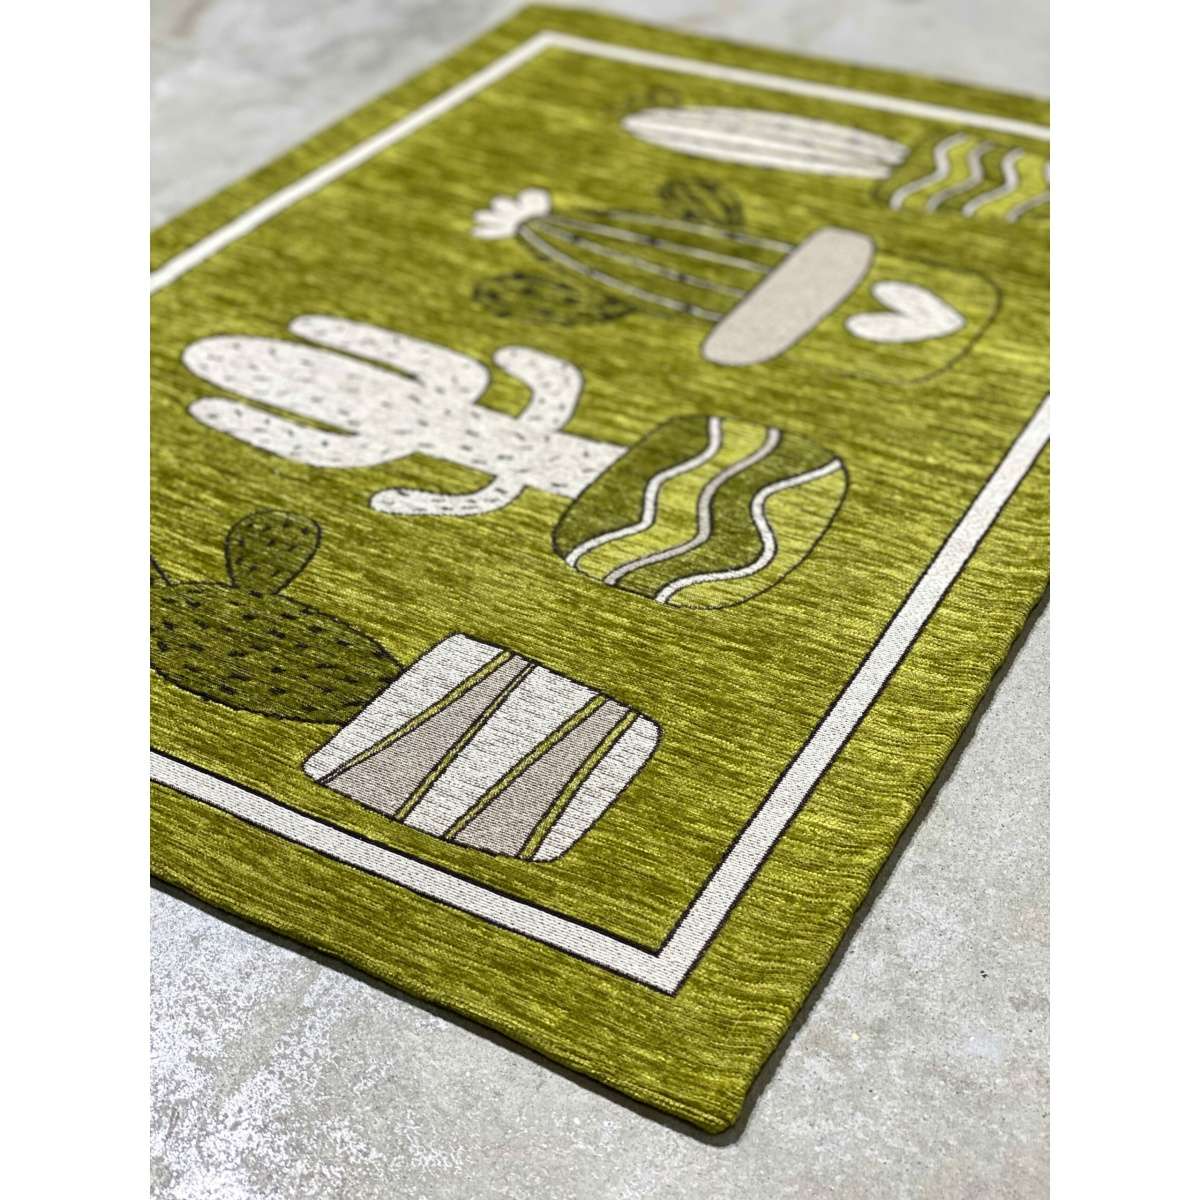 Immagine del prodotto Tappeto Cucina Cactus Verde Antiscivolo e Lavabile in Lavatrice | Pietro Zanetti Home